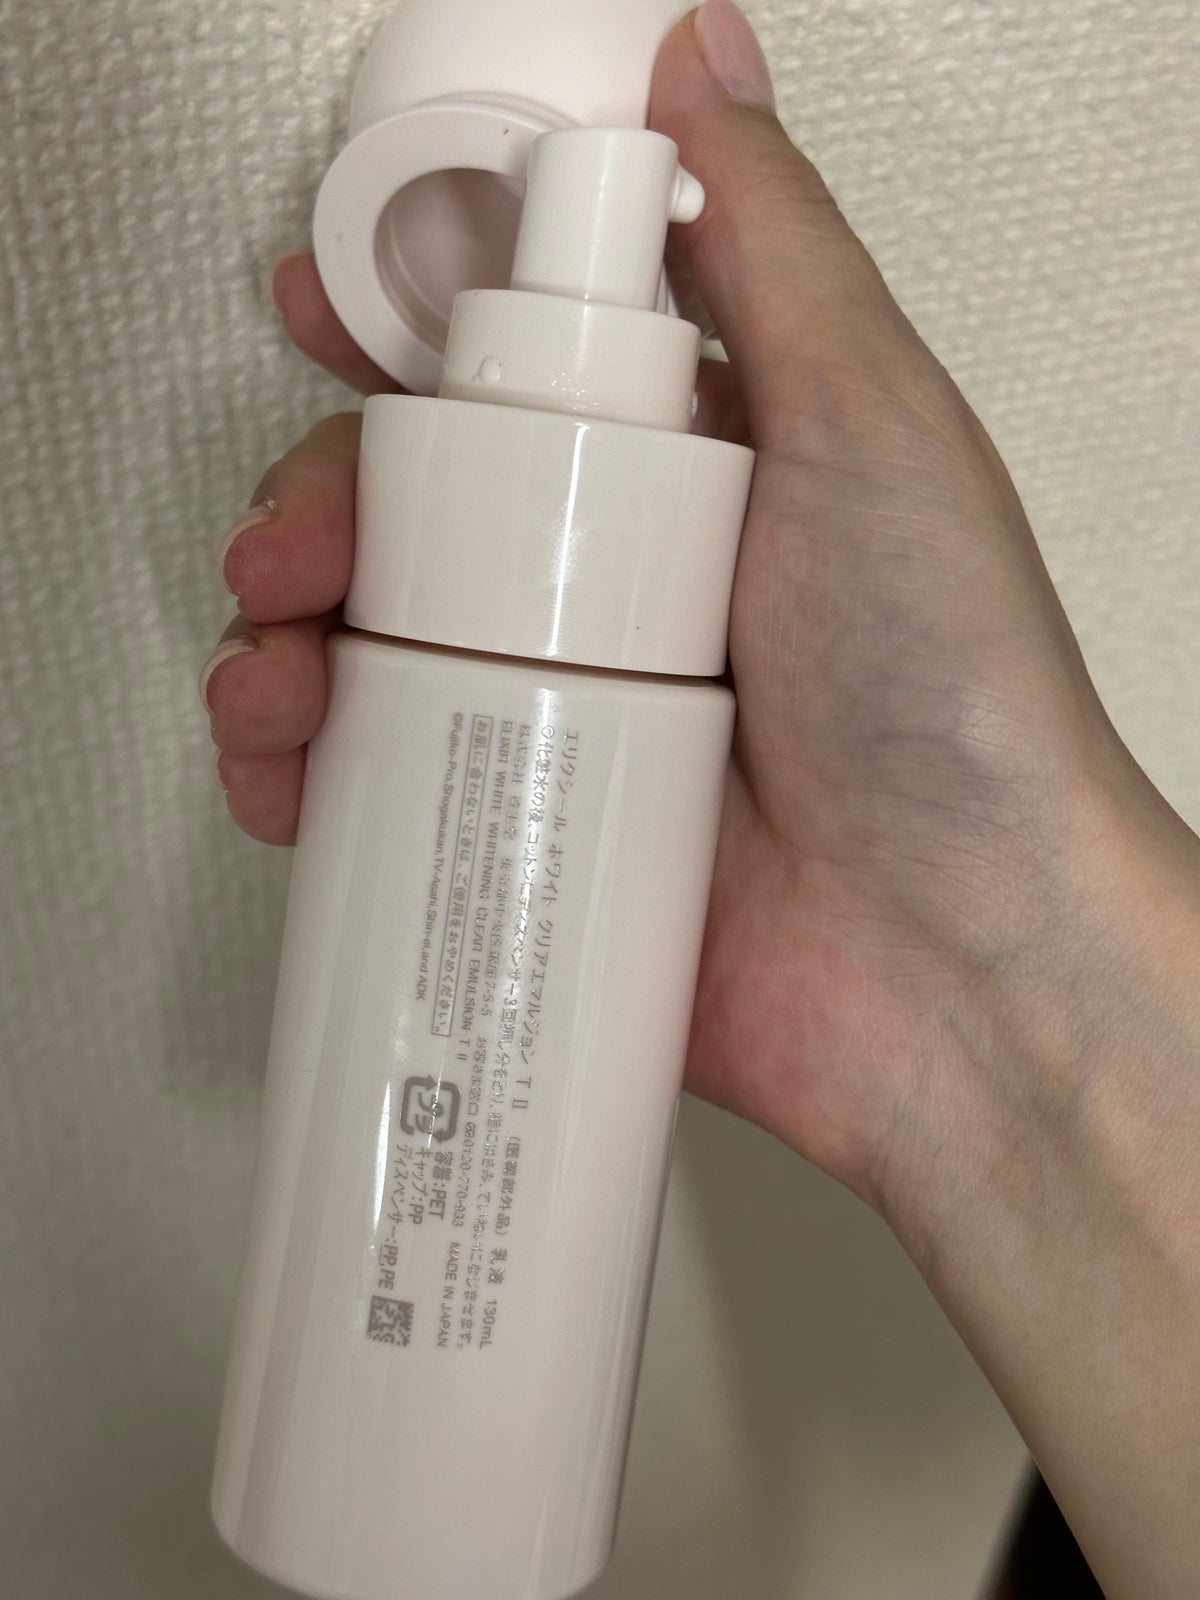 【新品未開封】資生堂エリクシール　ホワイト　美白化粧水⭐︎美白乳液セット